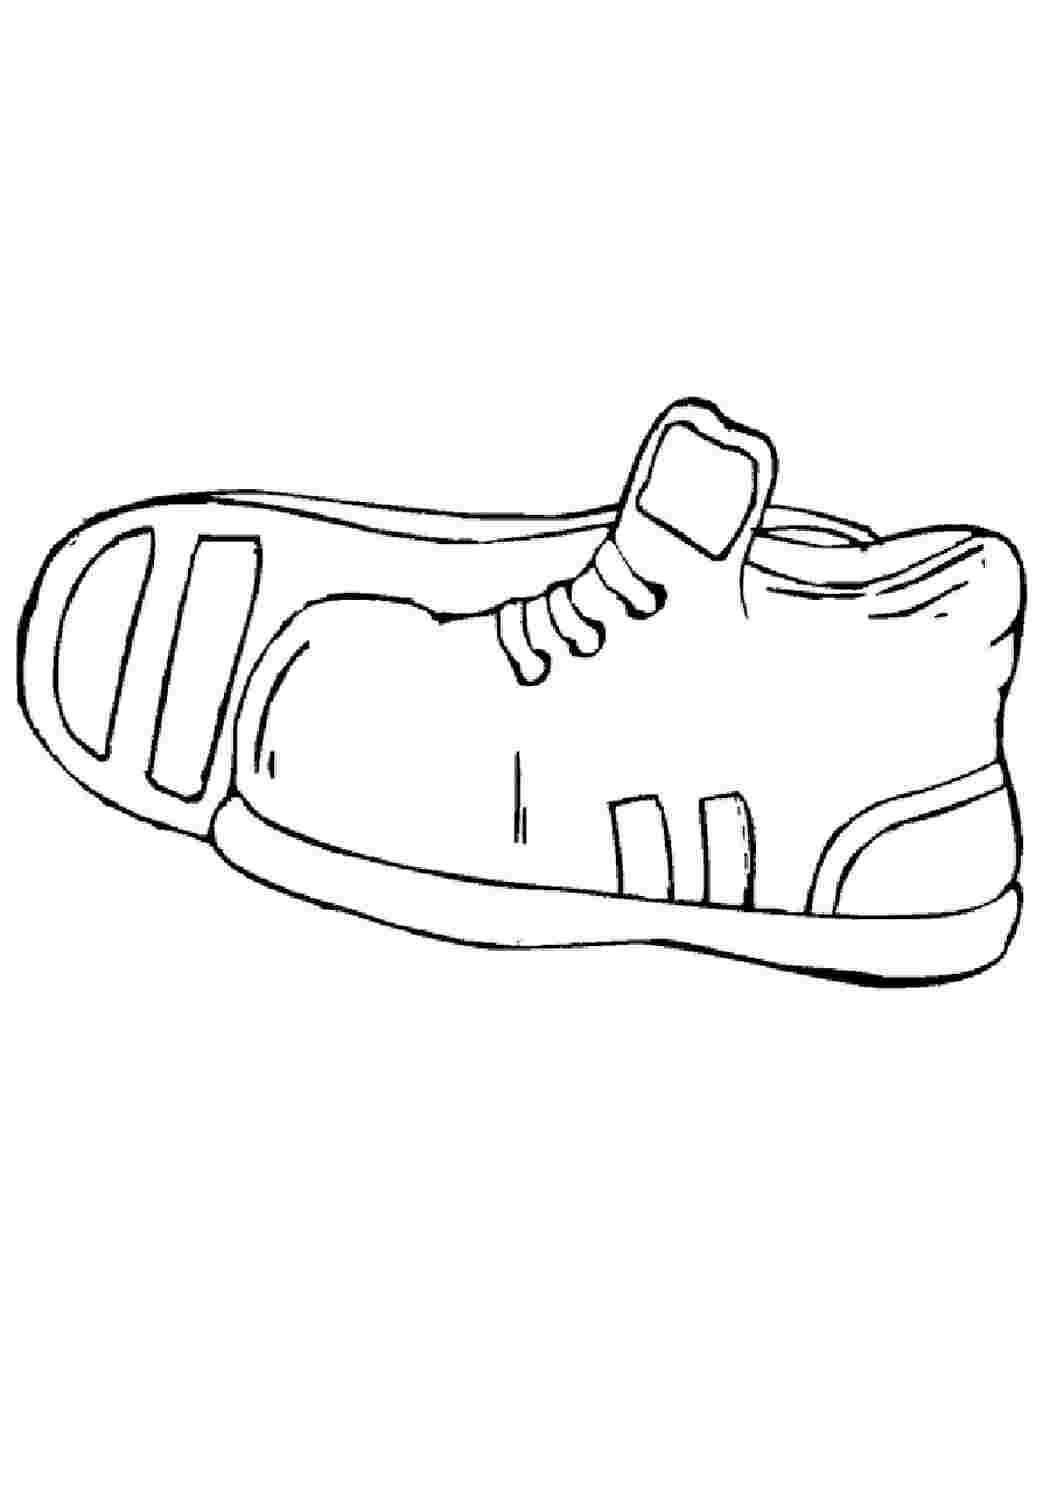 Обувь рисунок для детей